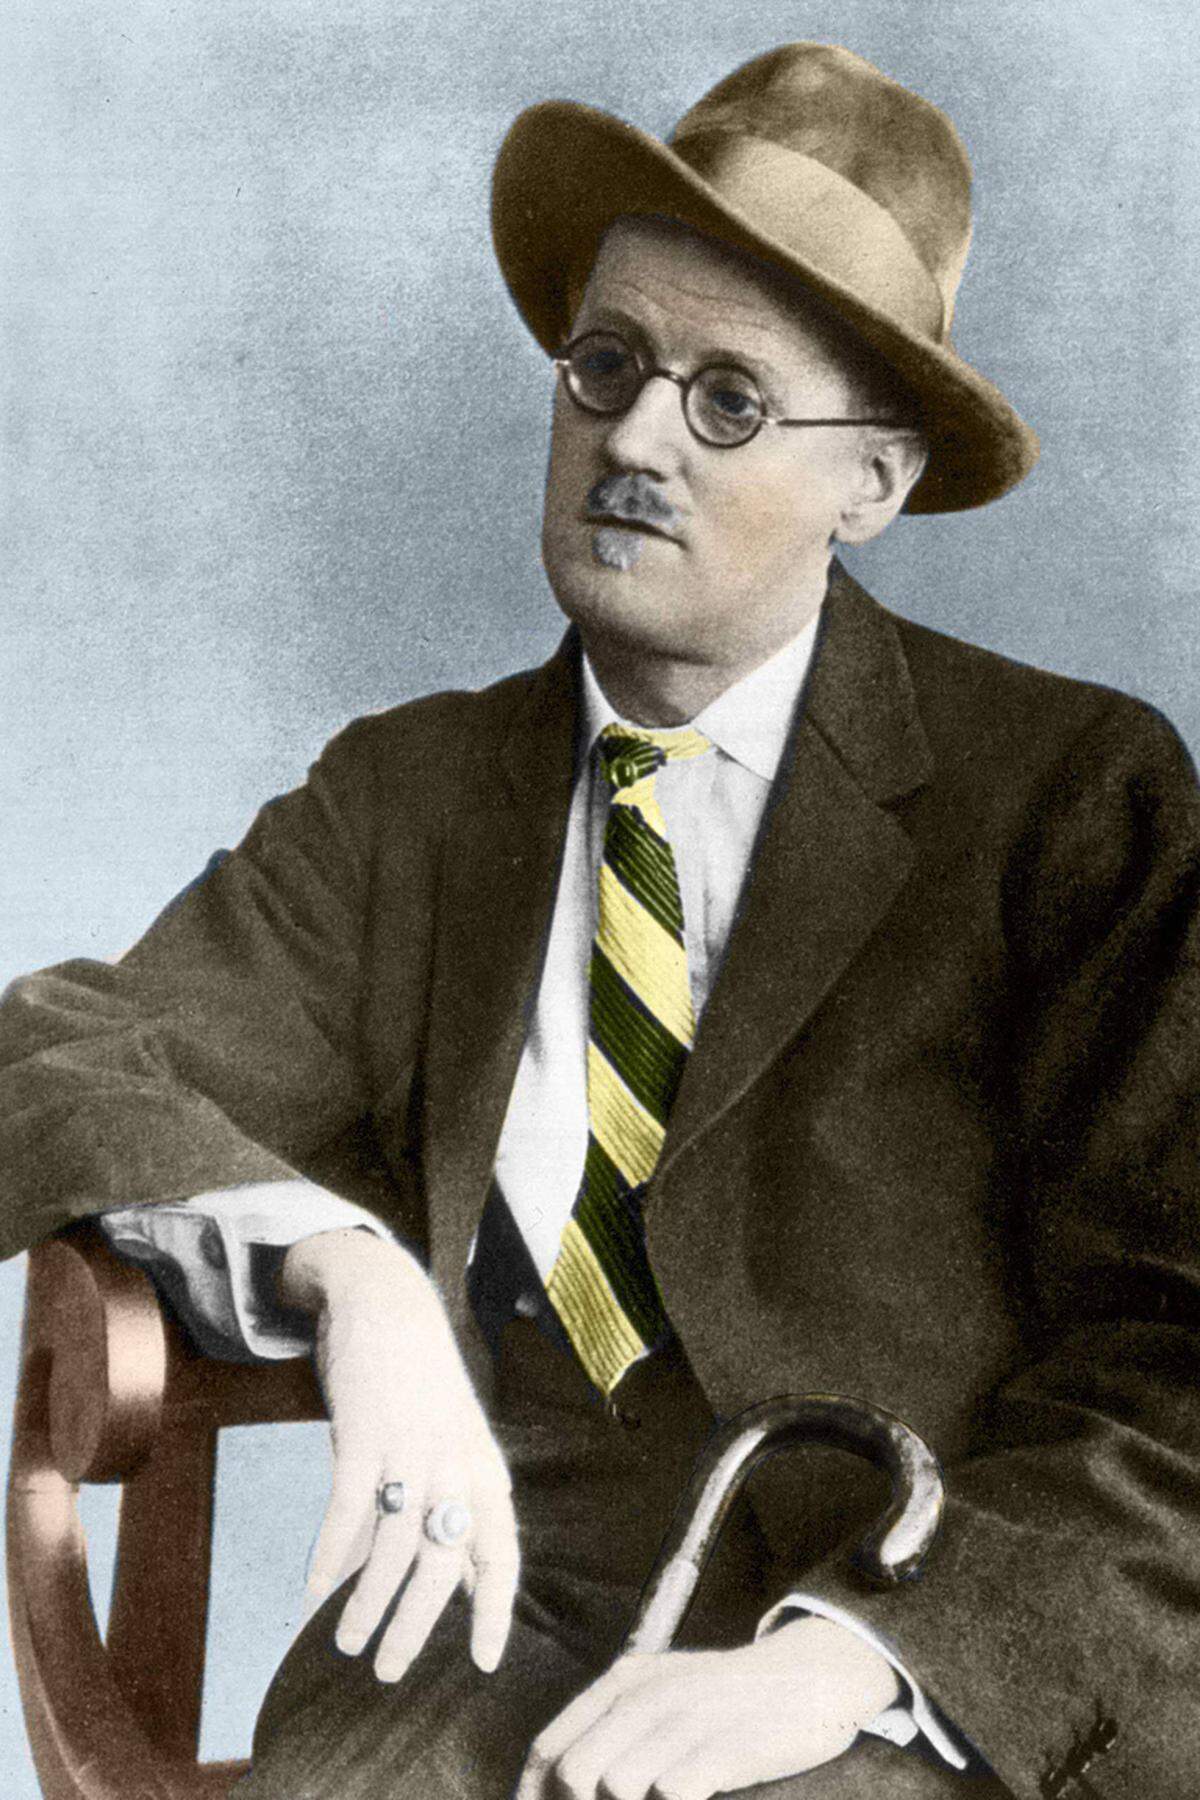 Richtig gelesen: James Joyce hat keinen Literatur-Nobelpreis erhalten. Wir wiederholen: James Joyce hat KEINEN Literatur-Nobelpreis erhalten. Der Schöpfer des Jahrhundert-Romans "Ulysses" wurde von der Jury einfach ignoriert. Das war wohl das größte Versäumnis des Komitees.